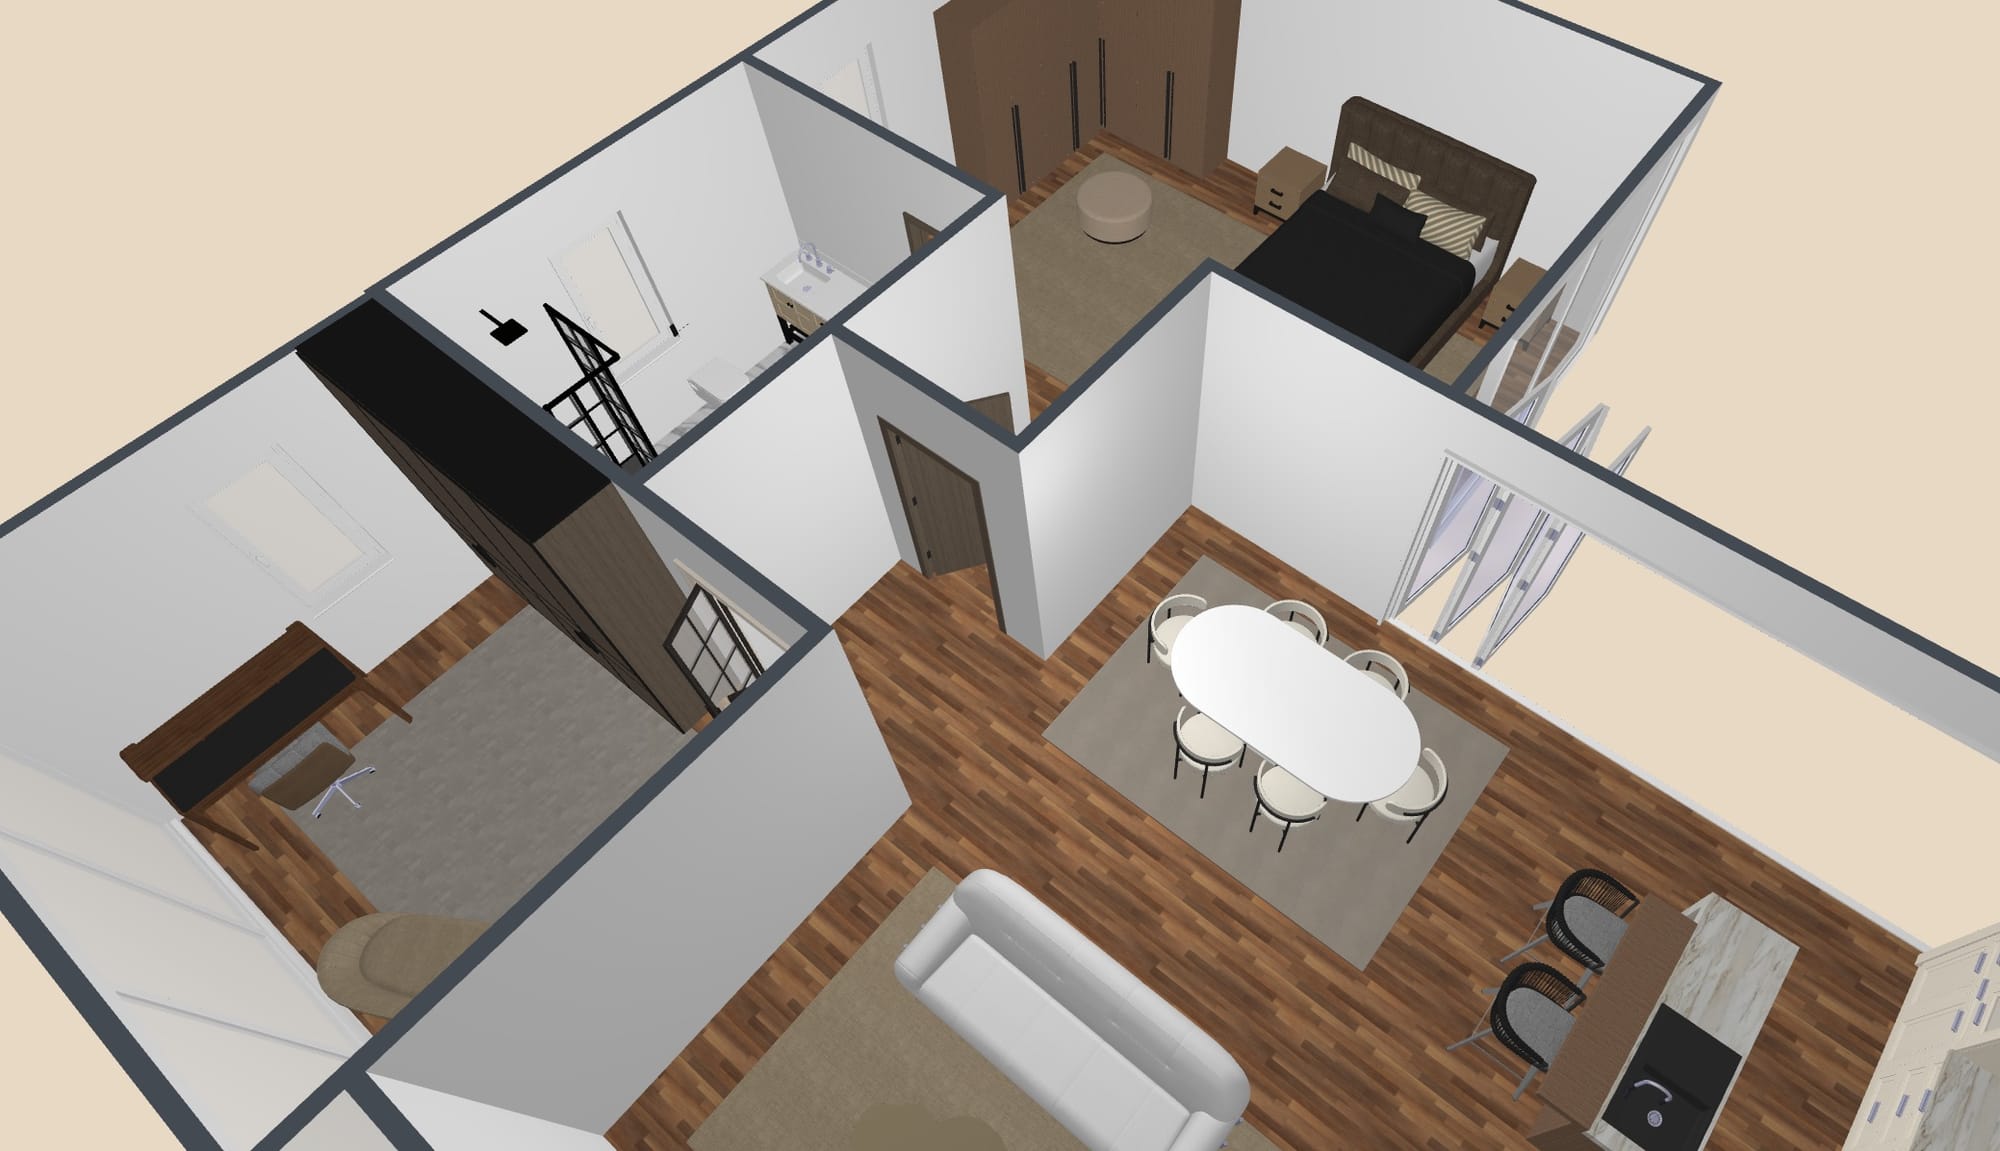 Planos Arquitectonicos de Casas: de uno y dos pisos con medidas